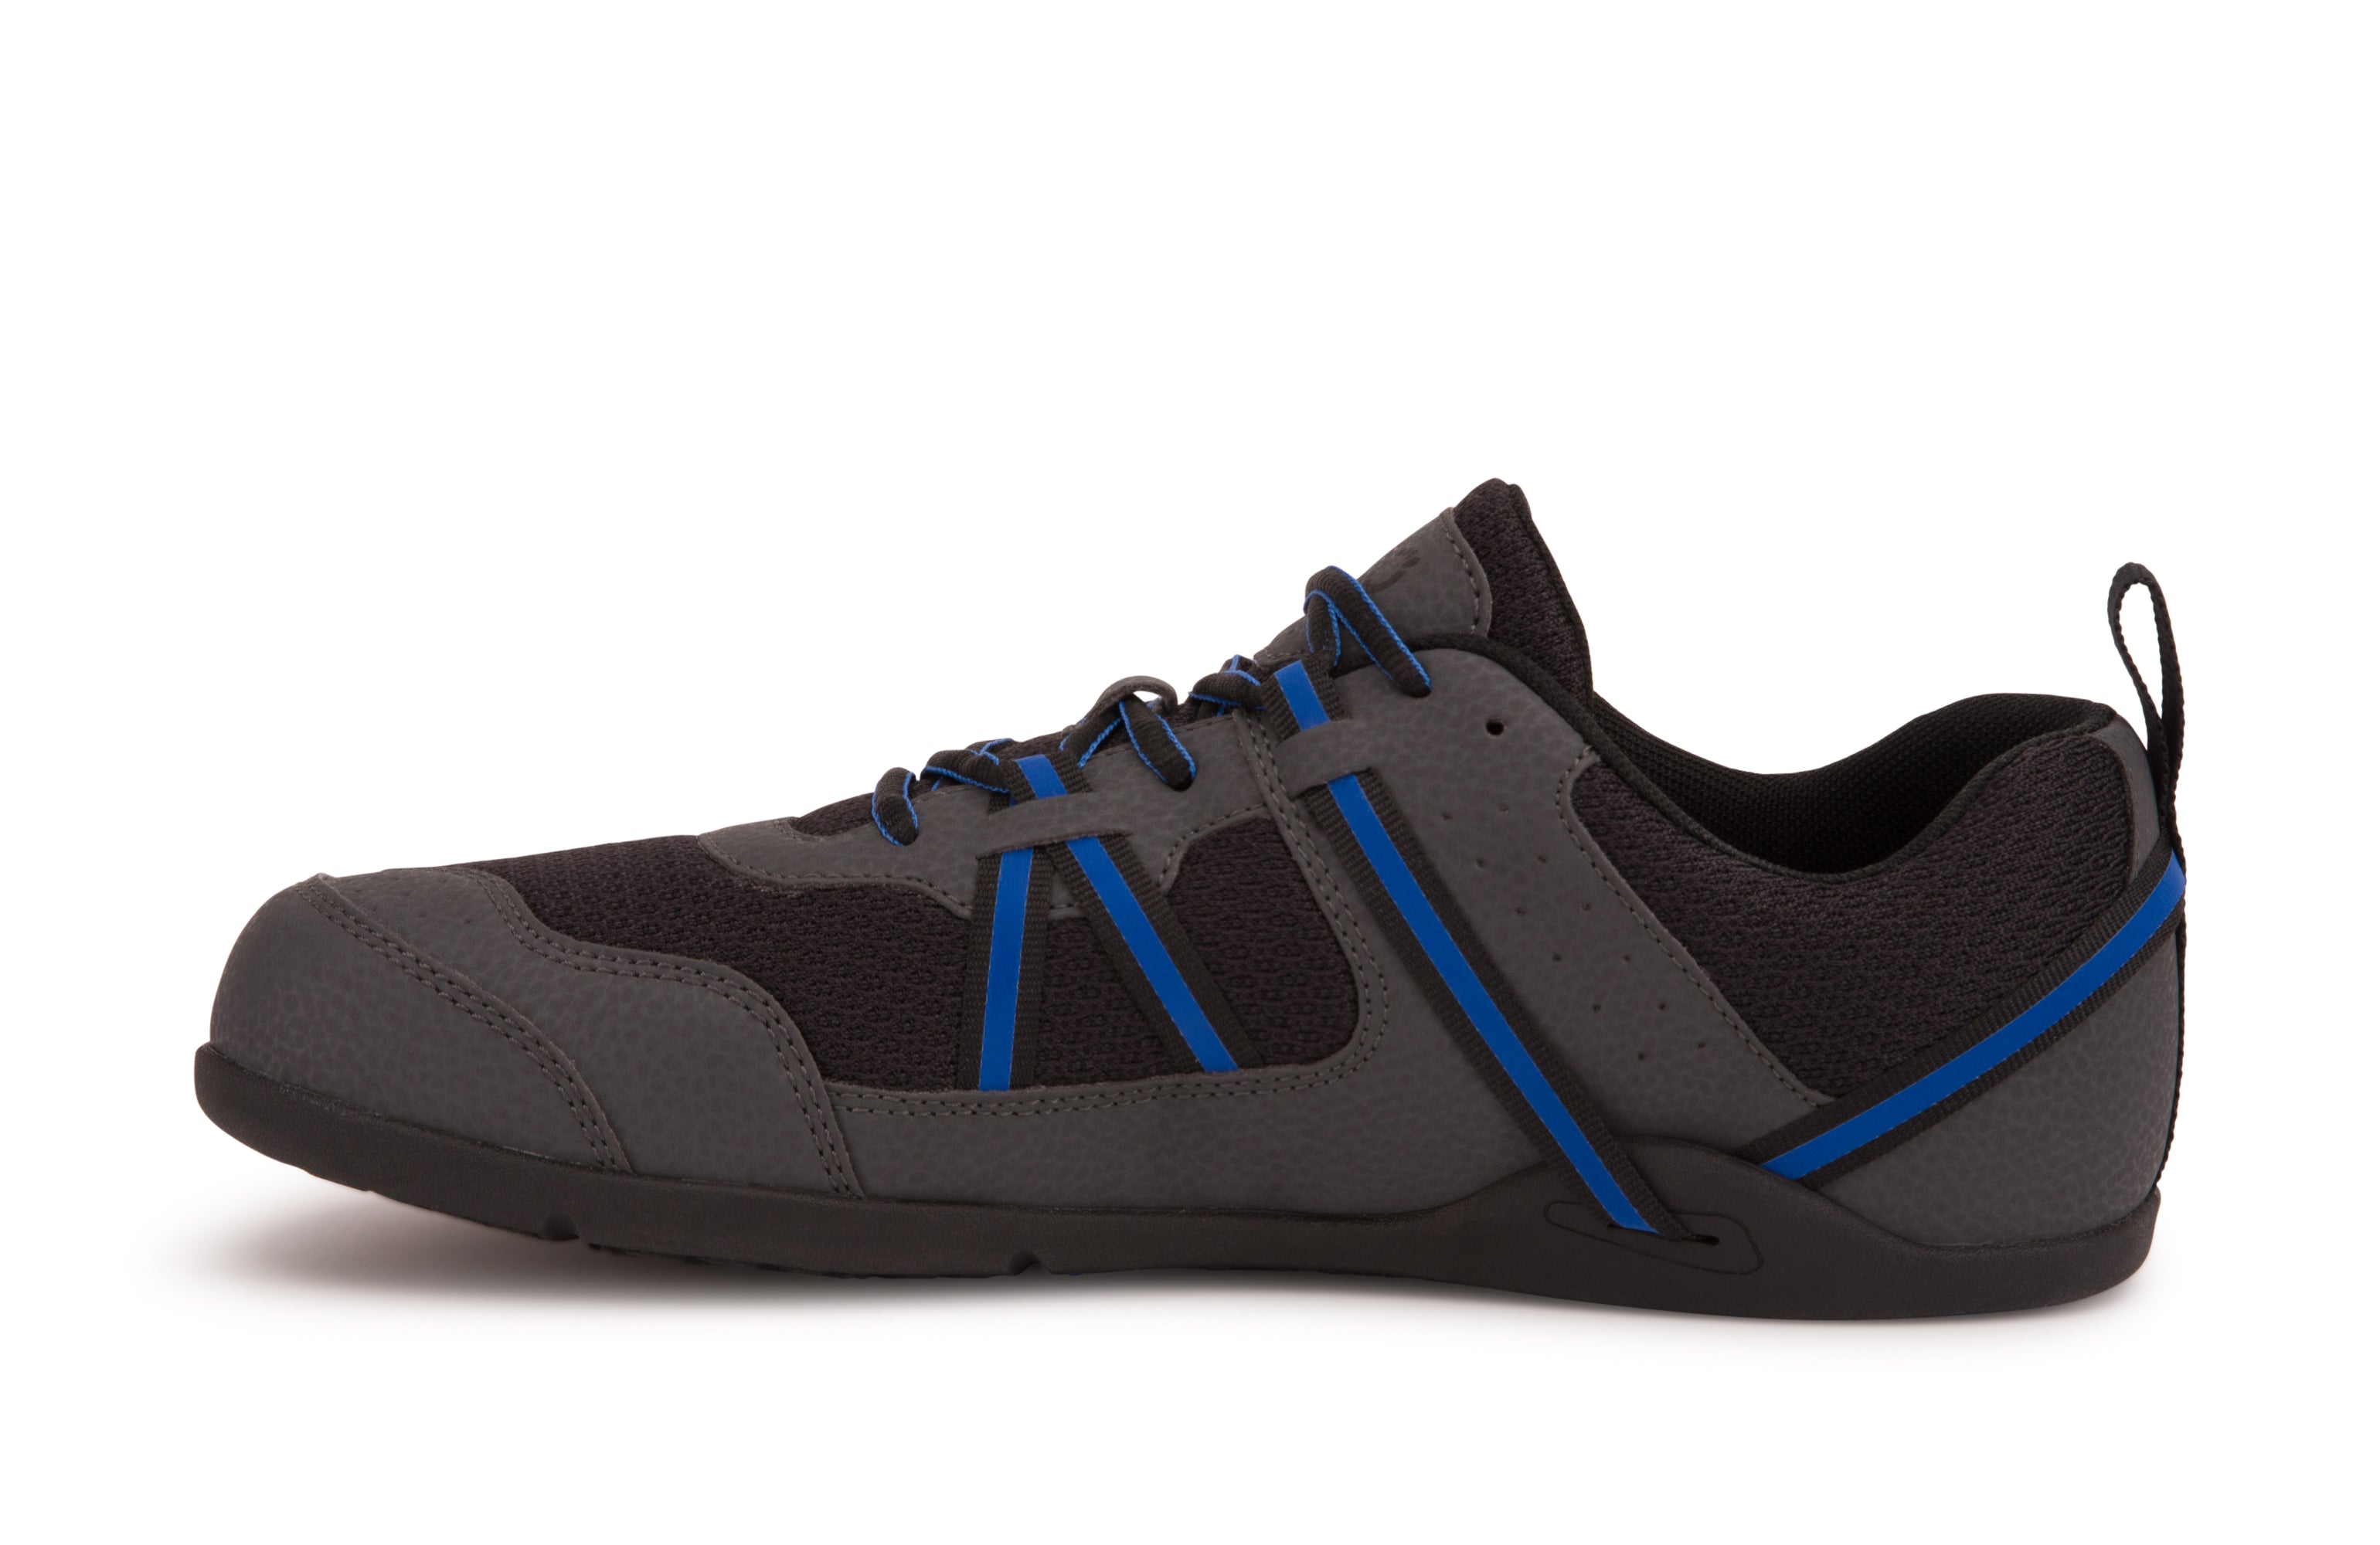 Xero Shoes Prio Womens barfods træningssko til kvinder i farven asphalt blue, inderside